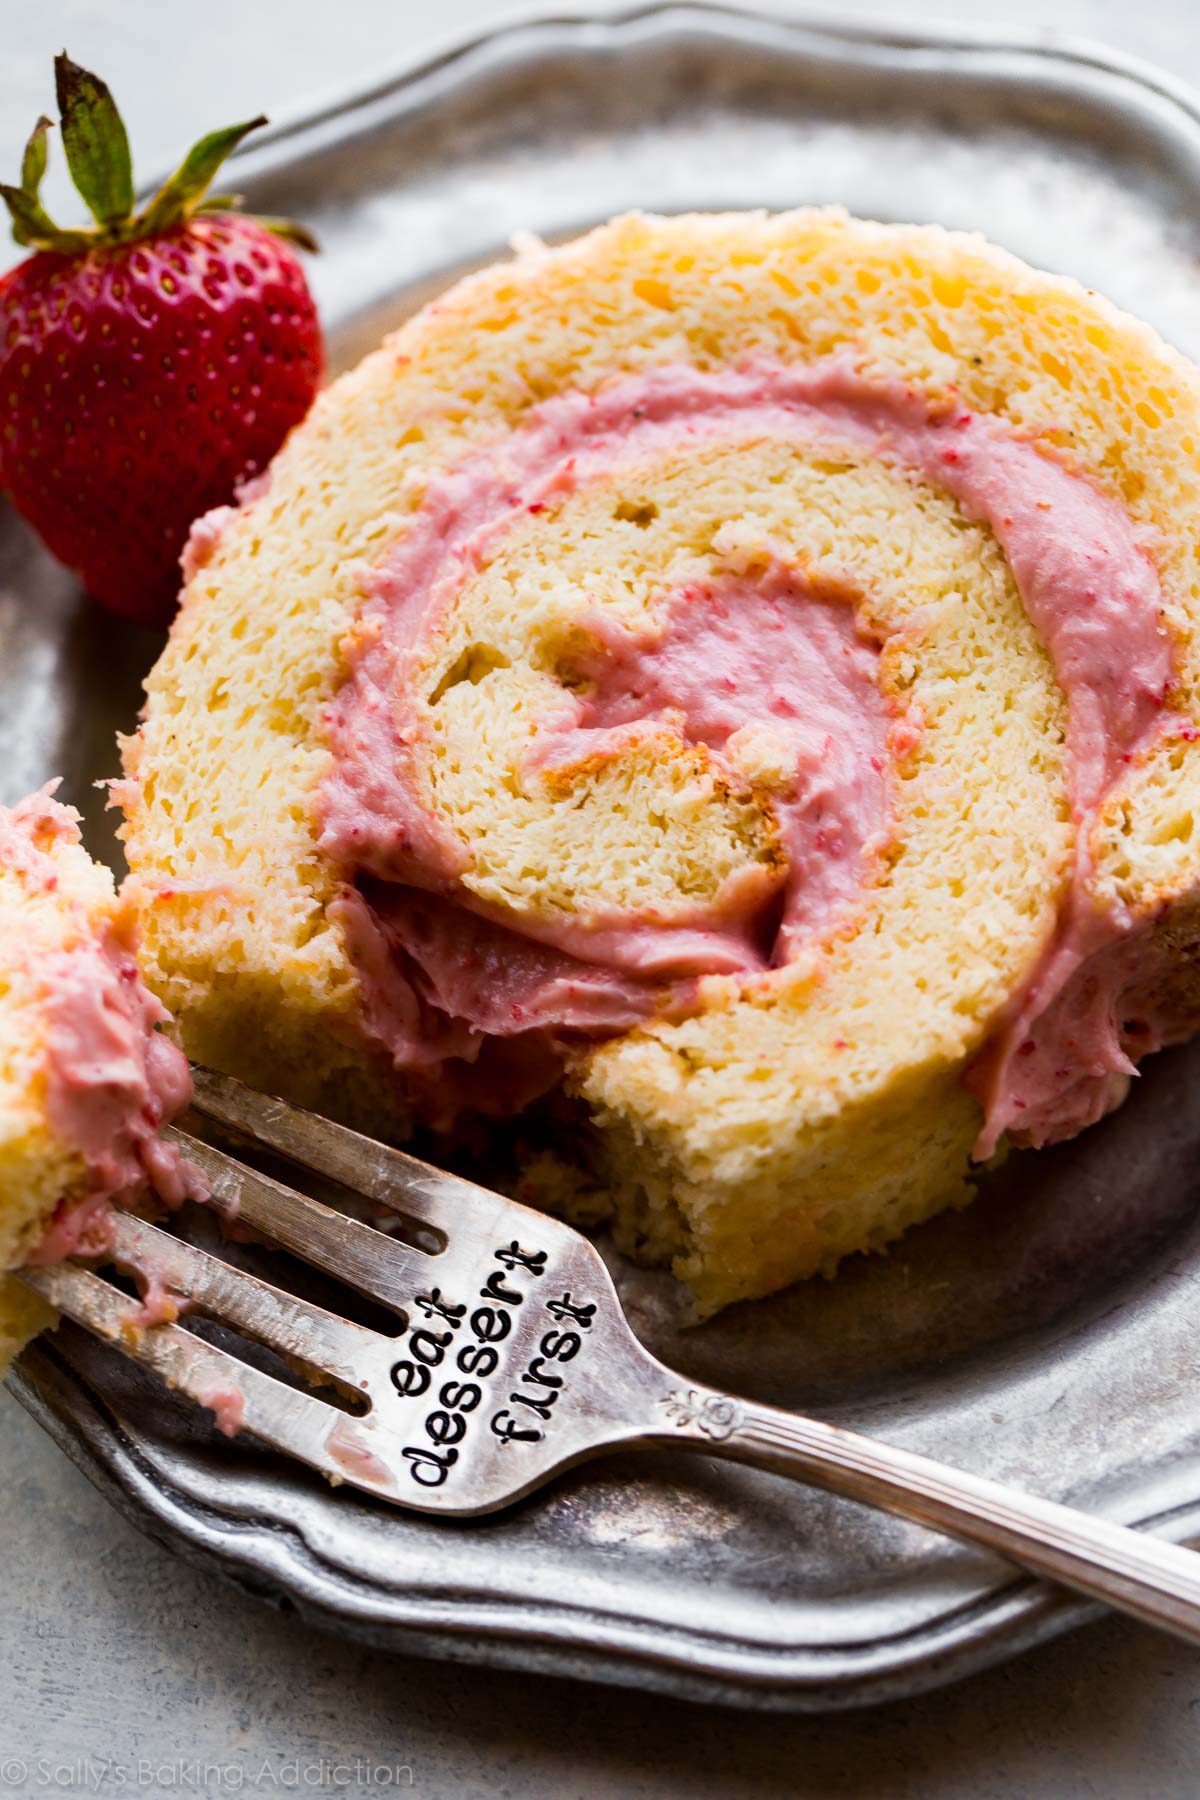 AIMER ce rouleau de gâteau aux fraises et à la crème léger et moelleux! Gâteau éponge à la gelée avec une délicieuse garniture à la crème de fraise Recette et tutoriel sur sallysbakingaddiction.com